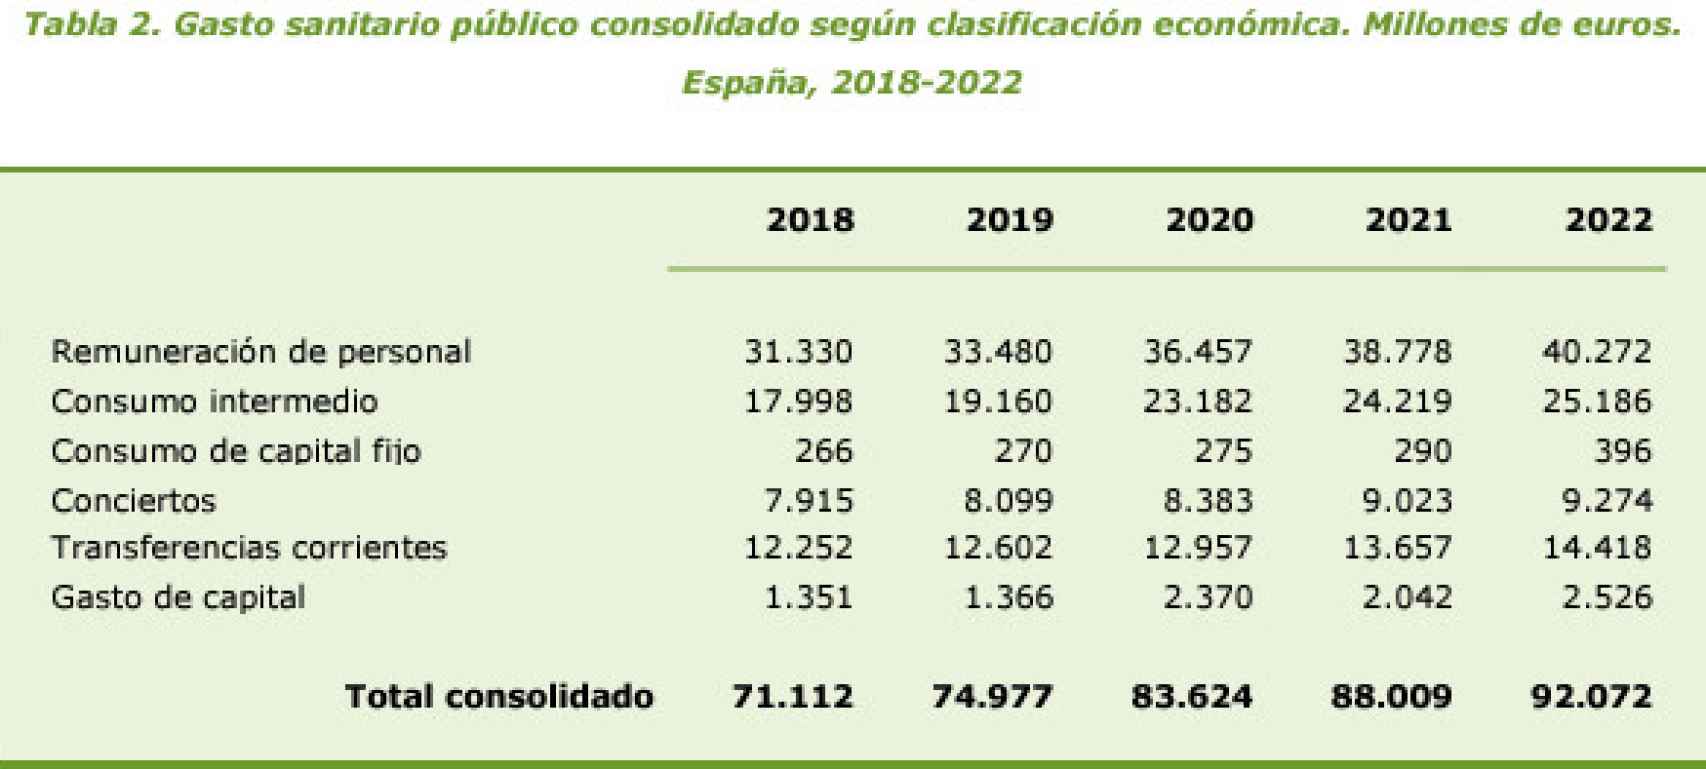 Gasto sanitario público consolidado según clasificación económica.